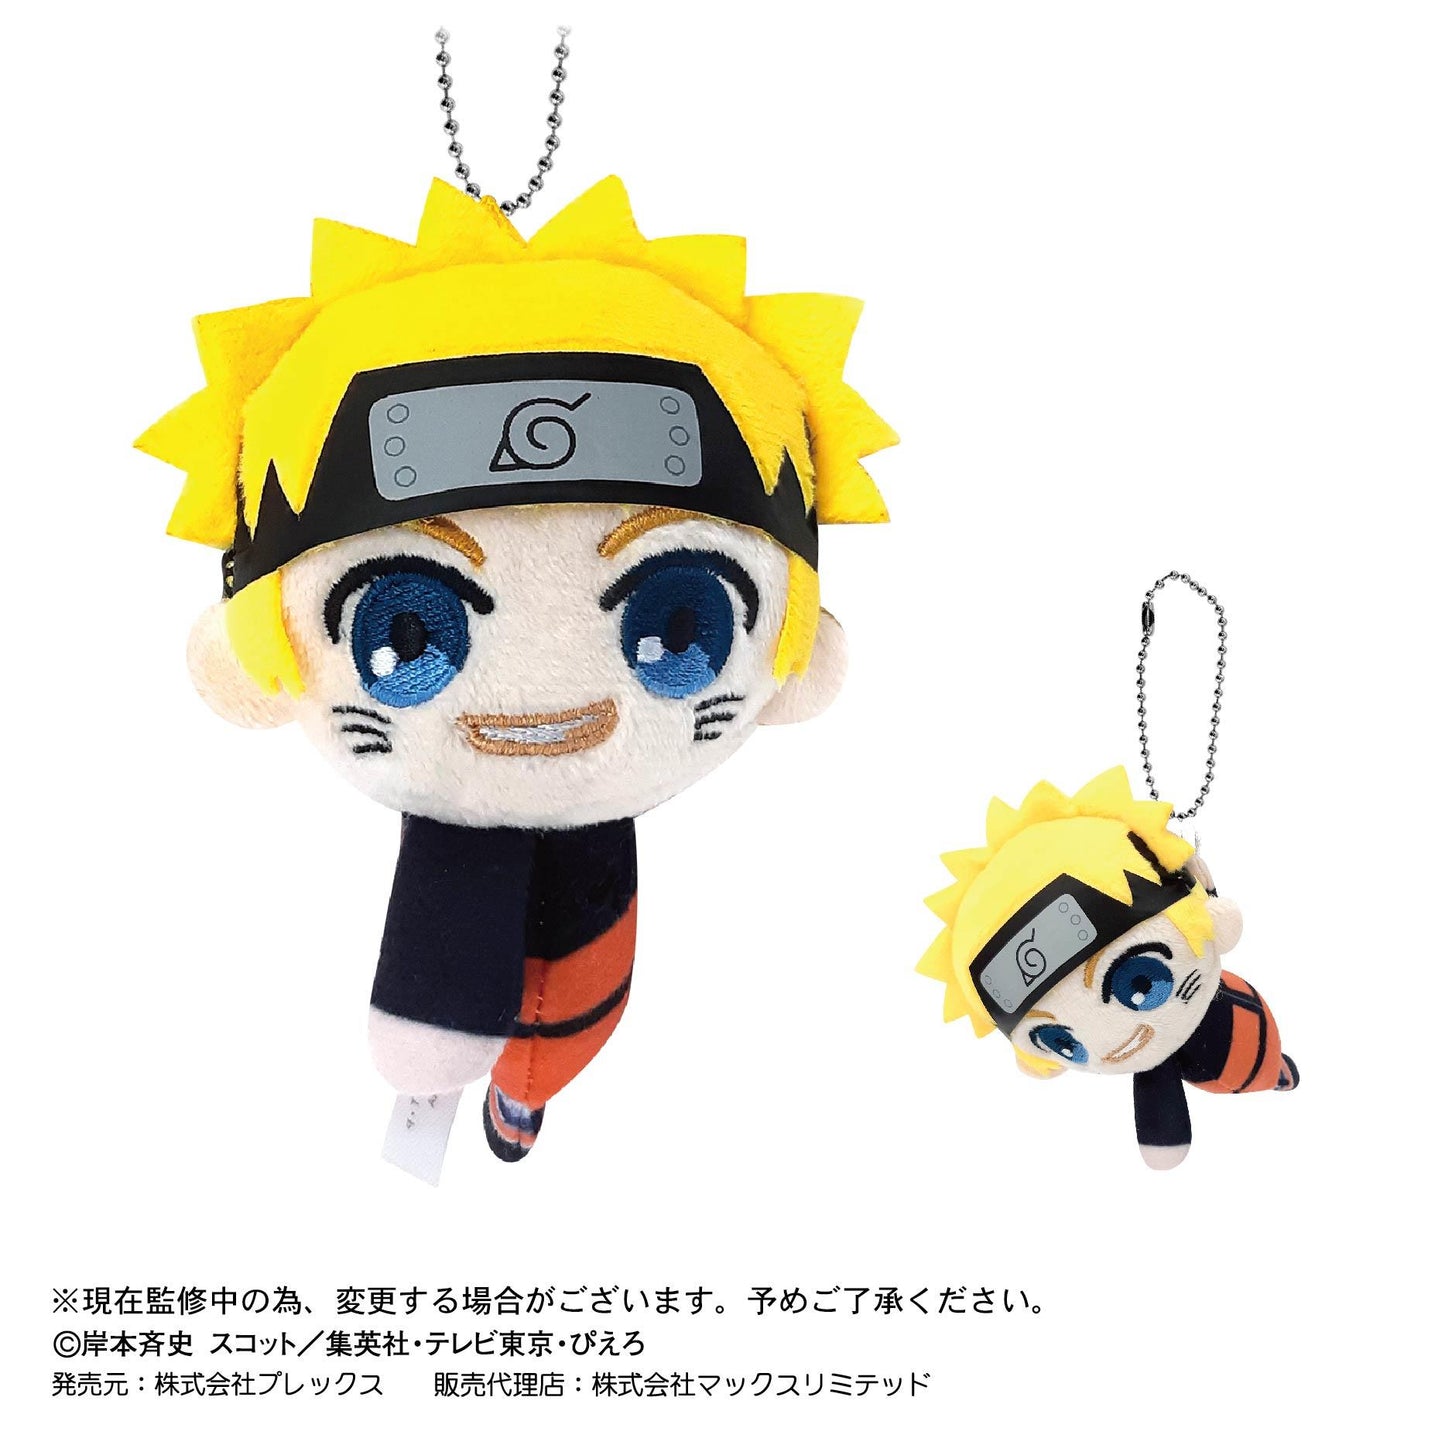 Naruto: TeteColle Plush Mascot Blind Box